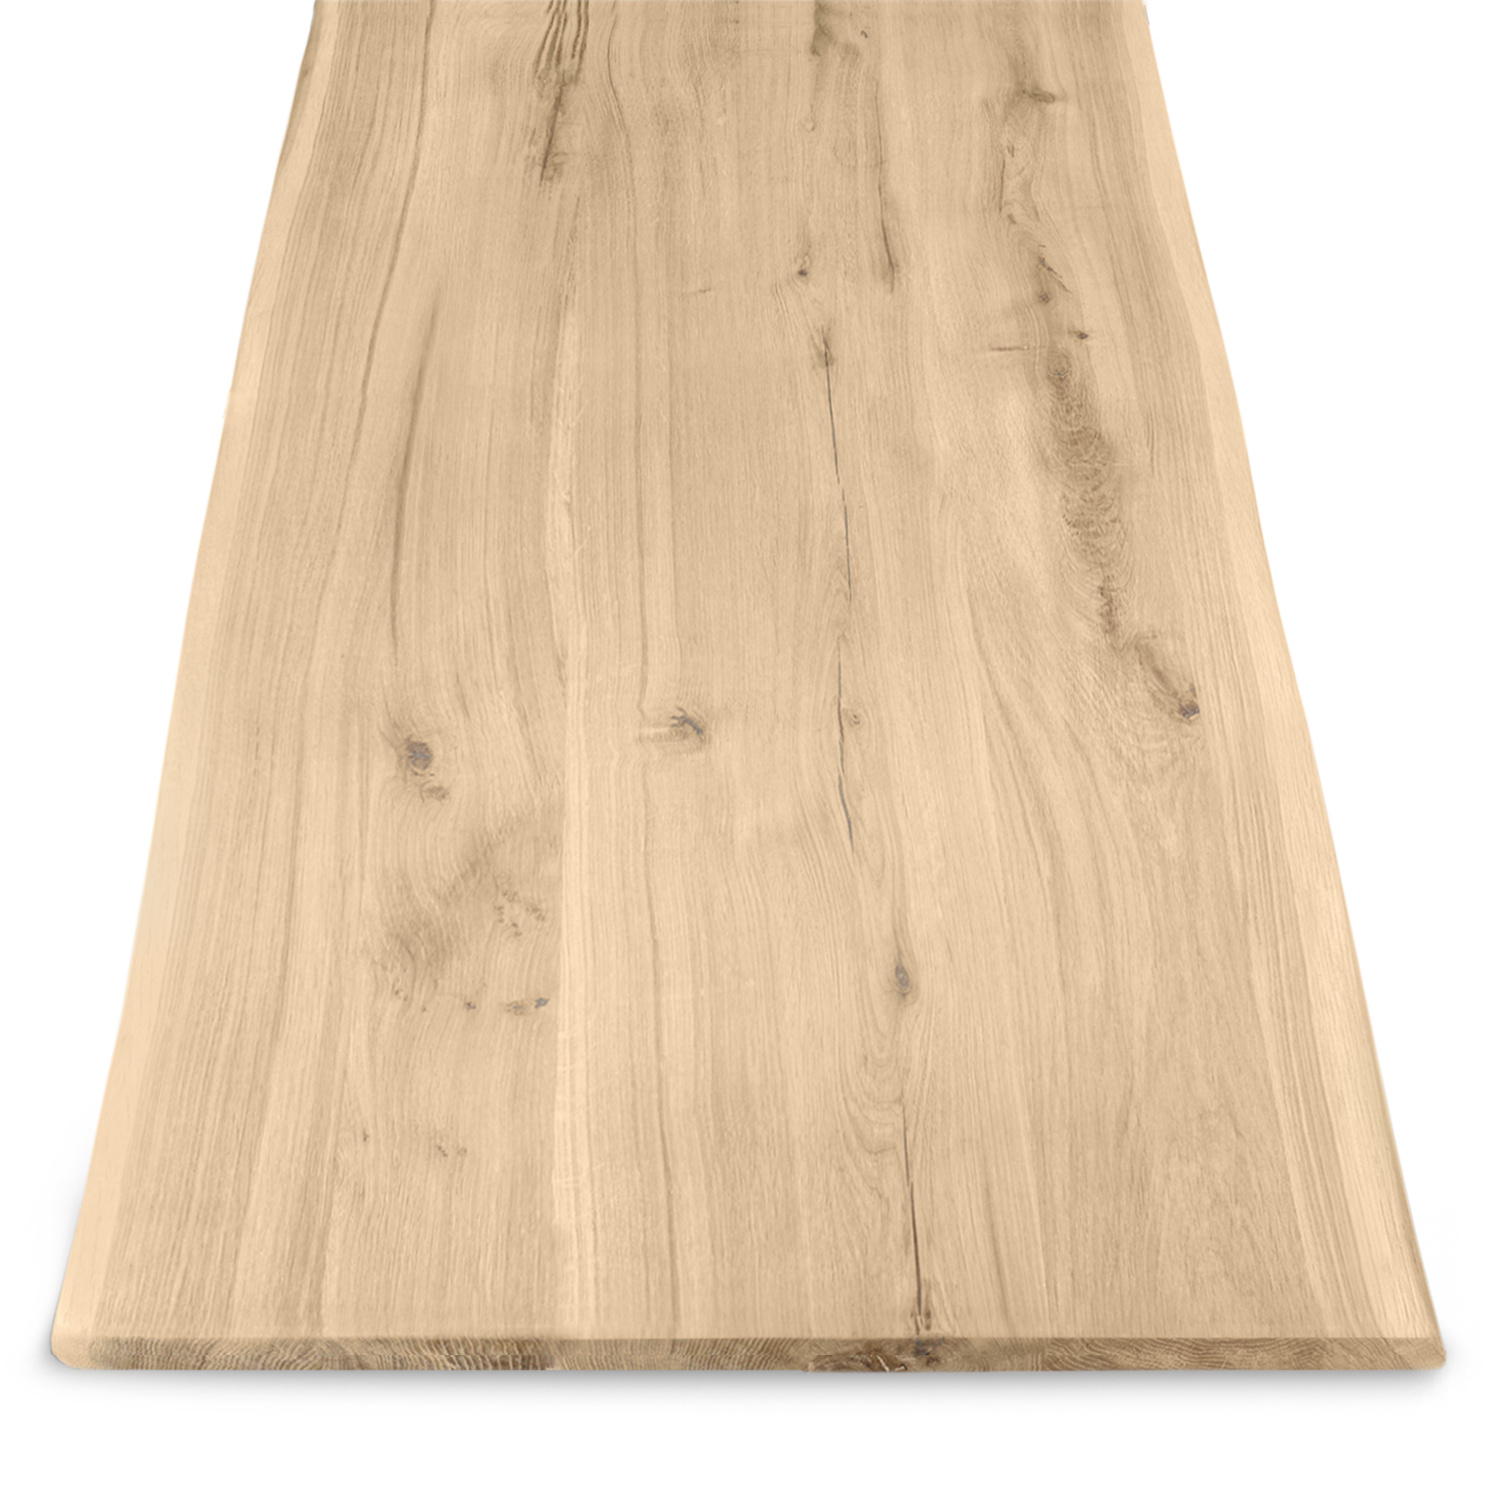  Tischplatte Wildeiche - Baumkante - 2,5 cm dick (1-Schicht) - XXL Lamellen (14-20 cm breit) - Asteiche (rustikal) mit natürlichen Baumkant - verleimt & künstlich getrocknet (HF 8-12%) - verschiedene Größen